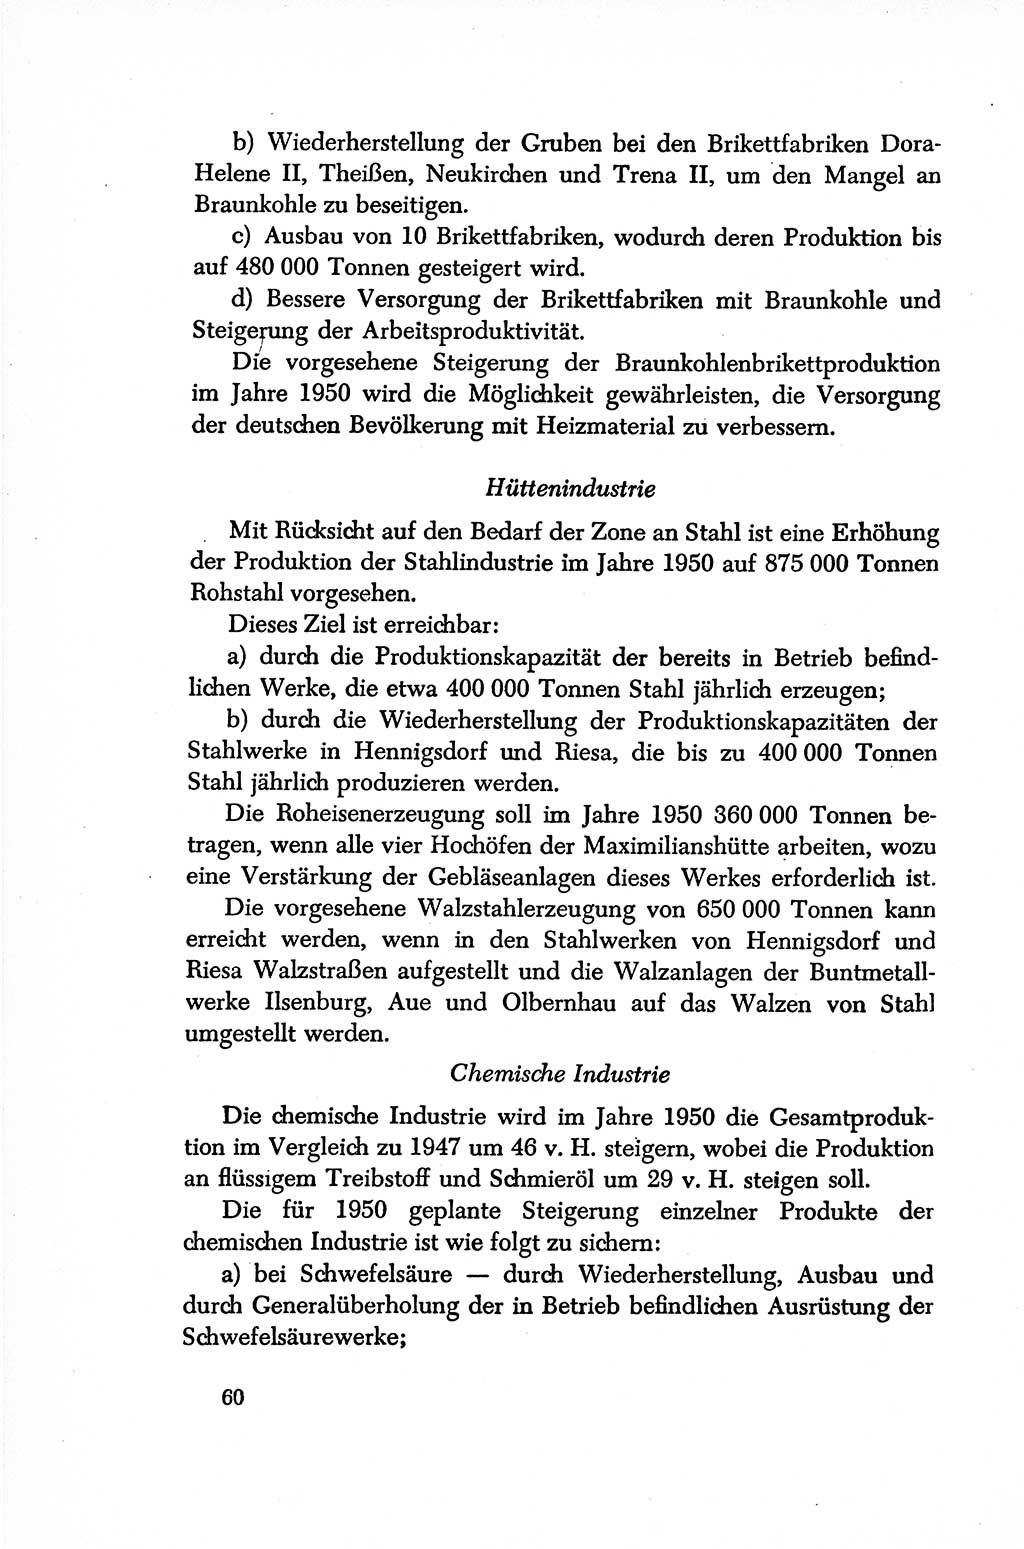 Dokumente der Sozialistischen Einheitspartei Deutschlands (SED) [Sowjetische Besatzungszone (SBZ) Deutschlands/Deutsche Demokratische Republik (DDR)] 1948-1950, Seite 60 (Dok. SED SBZ Dtl. DDR 1948-1950, S. 60)